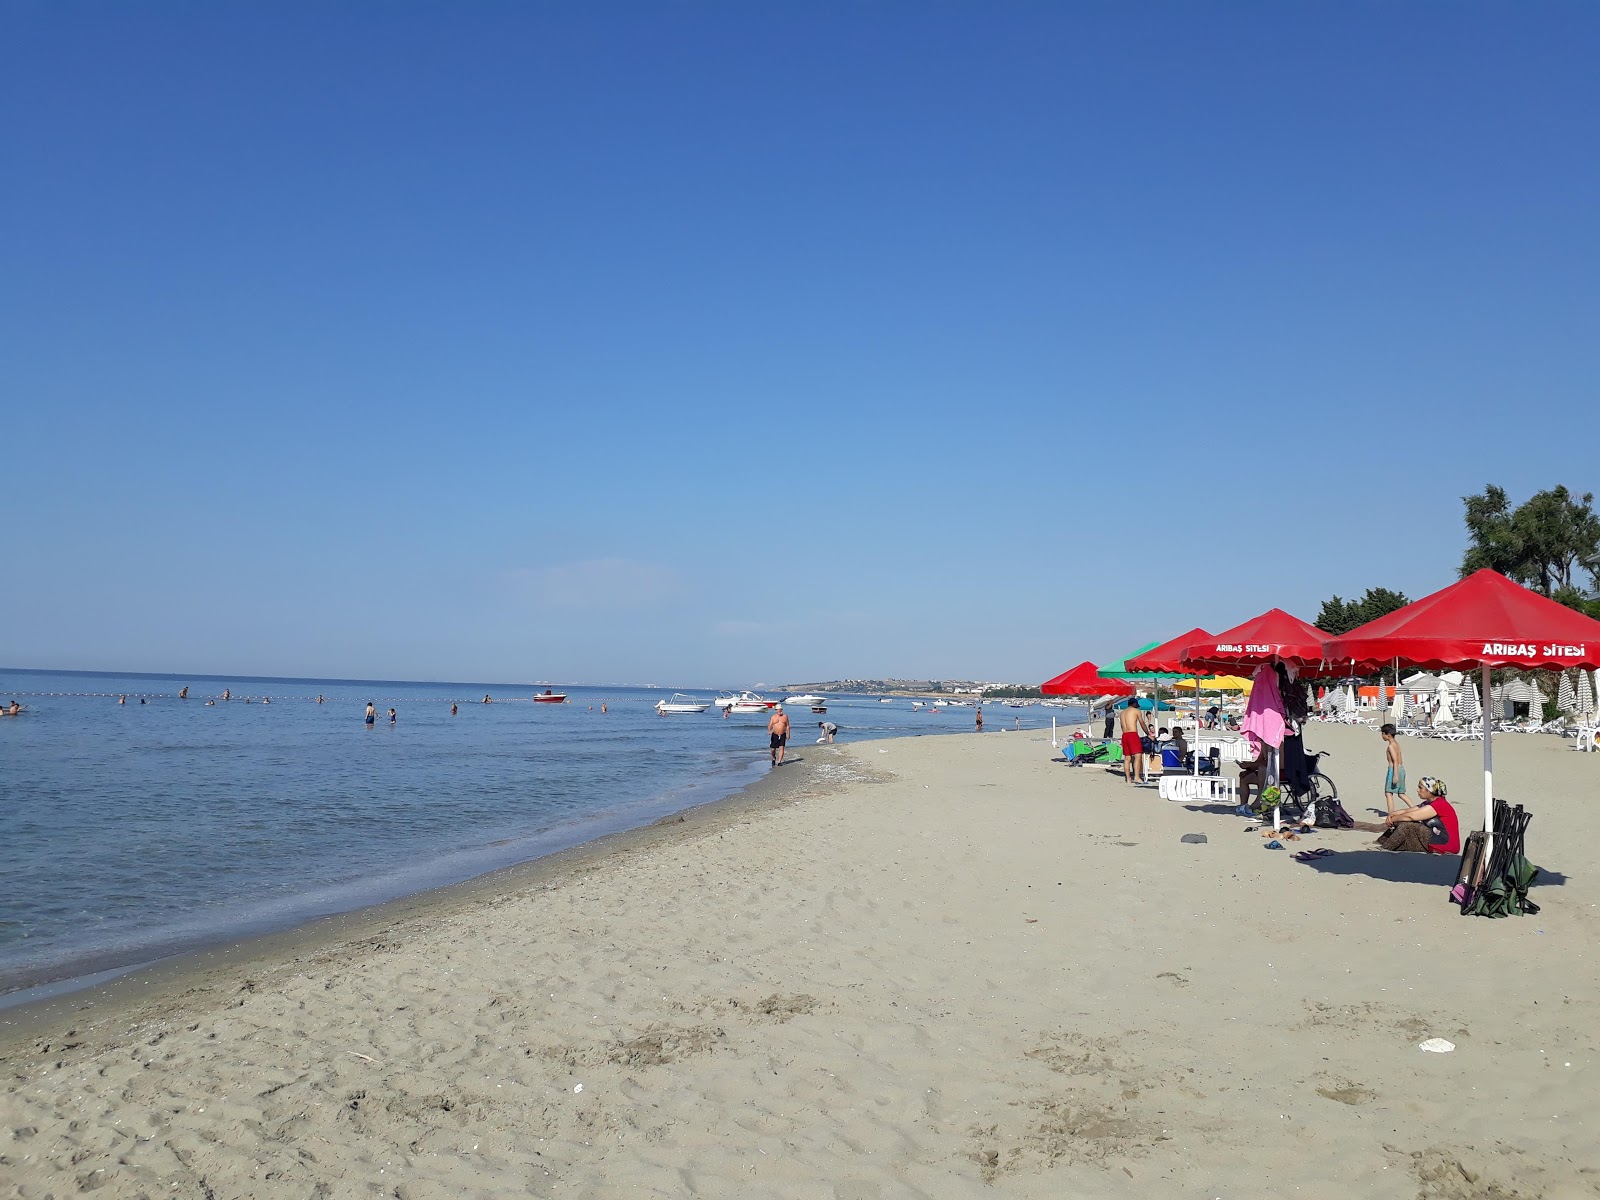 Ohri beach'in fotoğrafı kahverengi kum yüzey ile